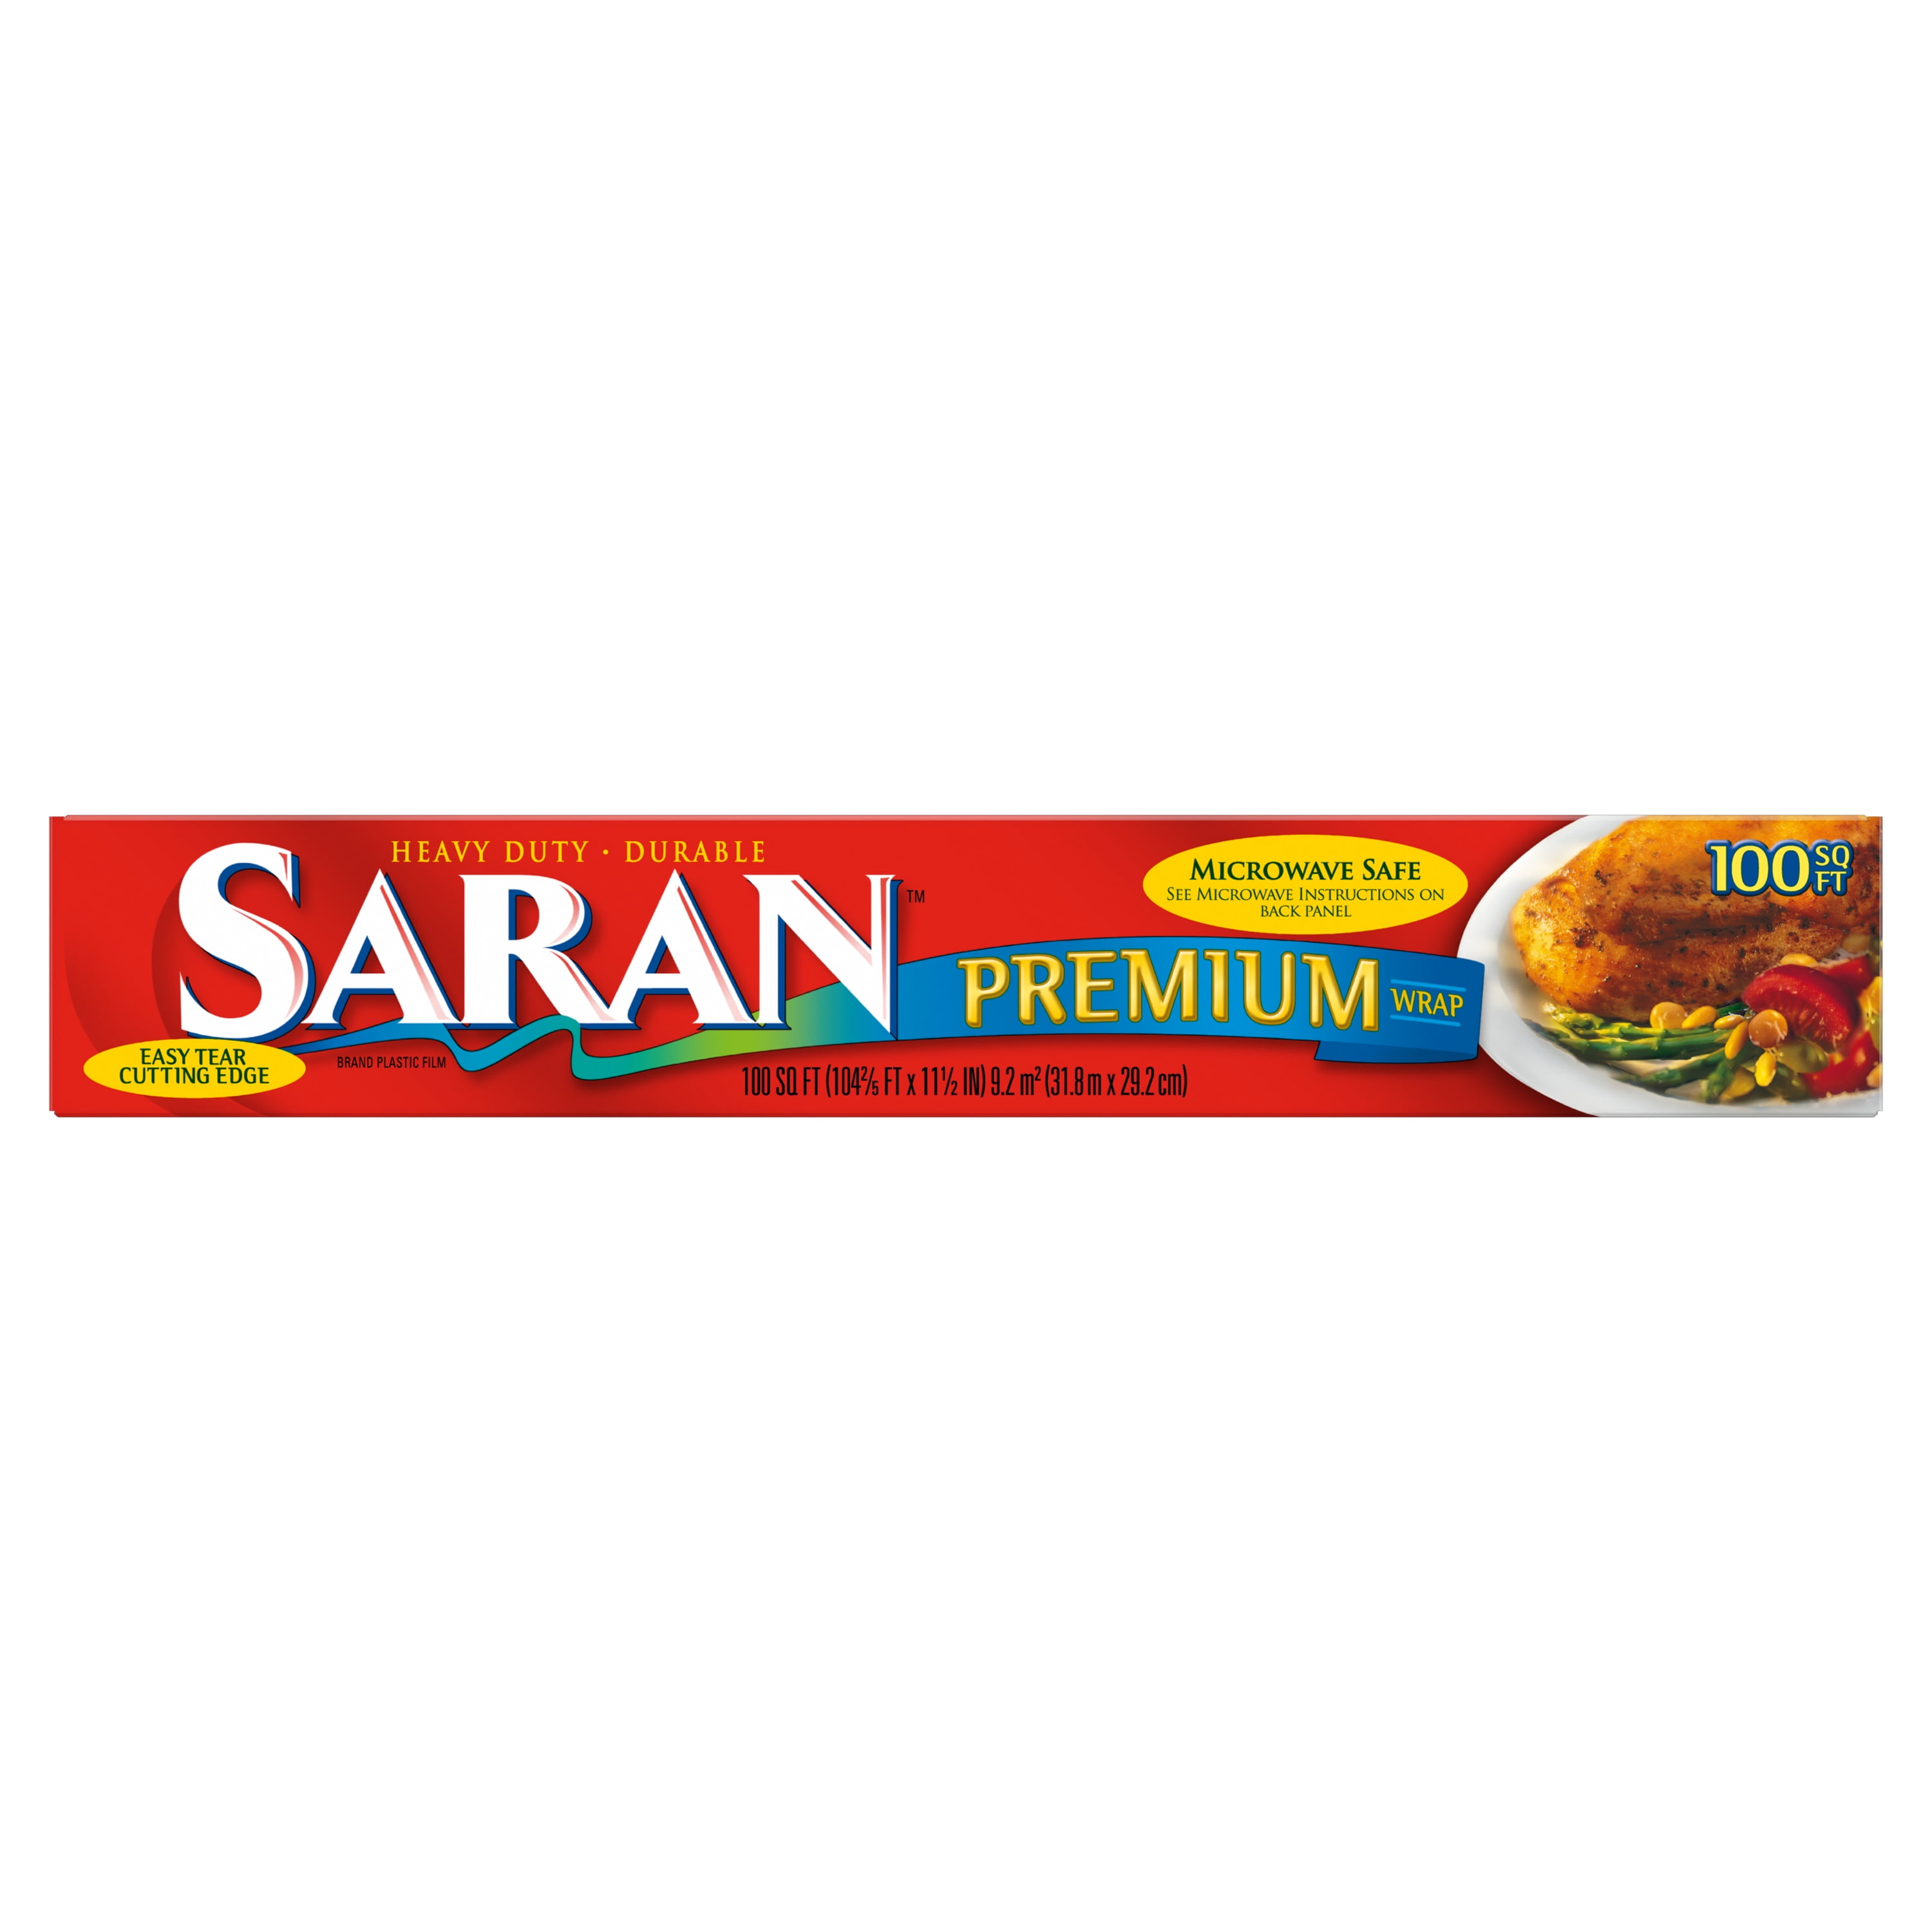 SC Johnson Saran™ 87077 Premium 100 Sq. Ft. Plastic Wrap